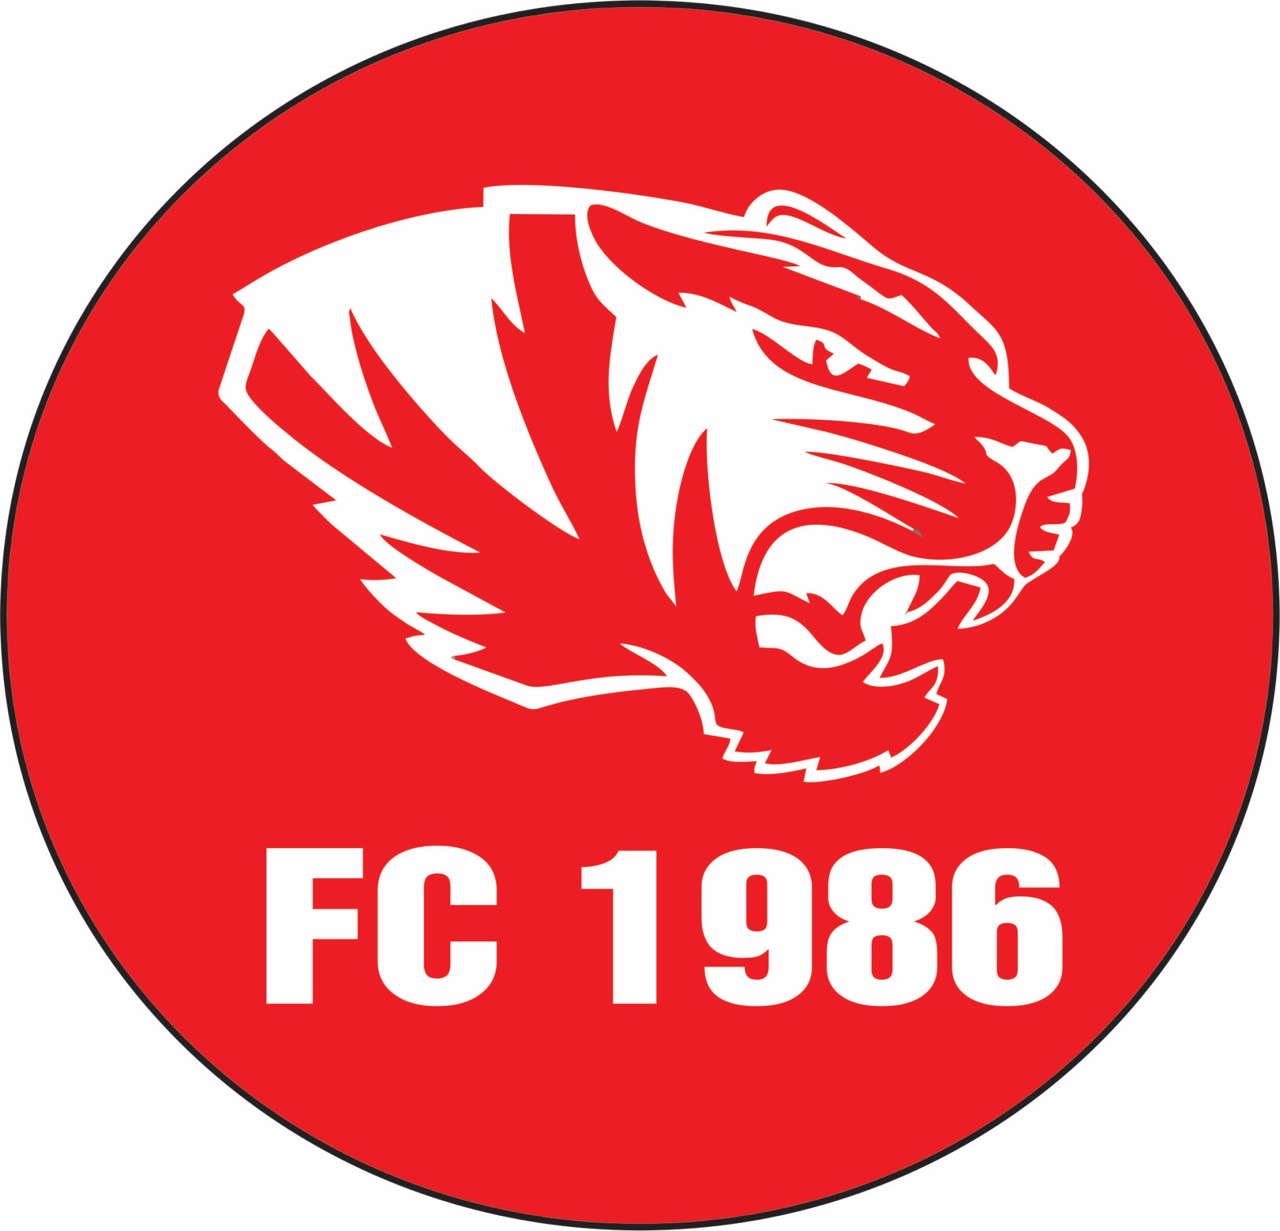 FC 1986